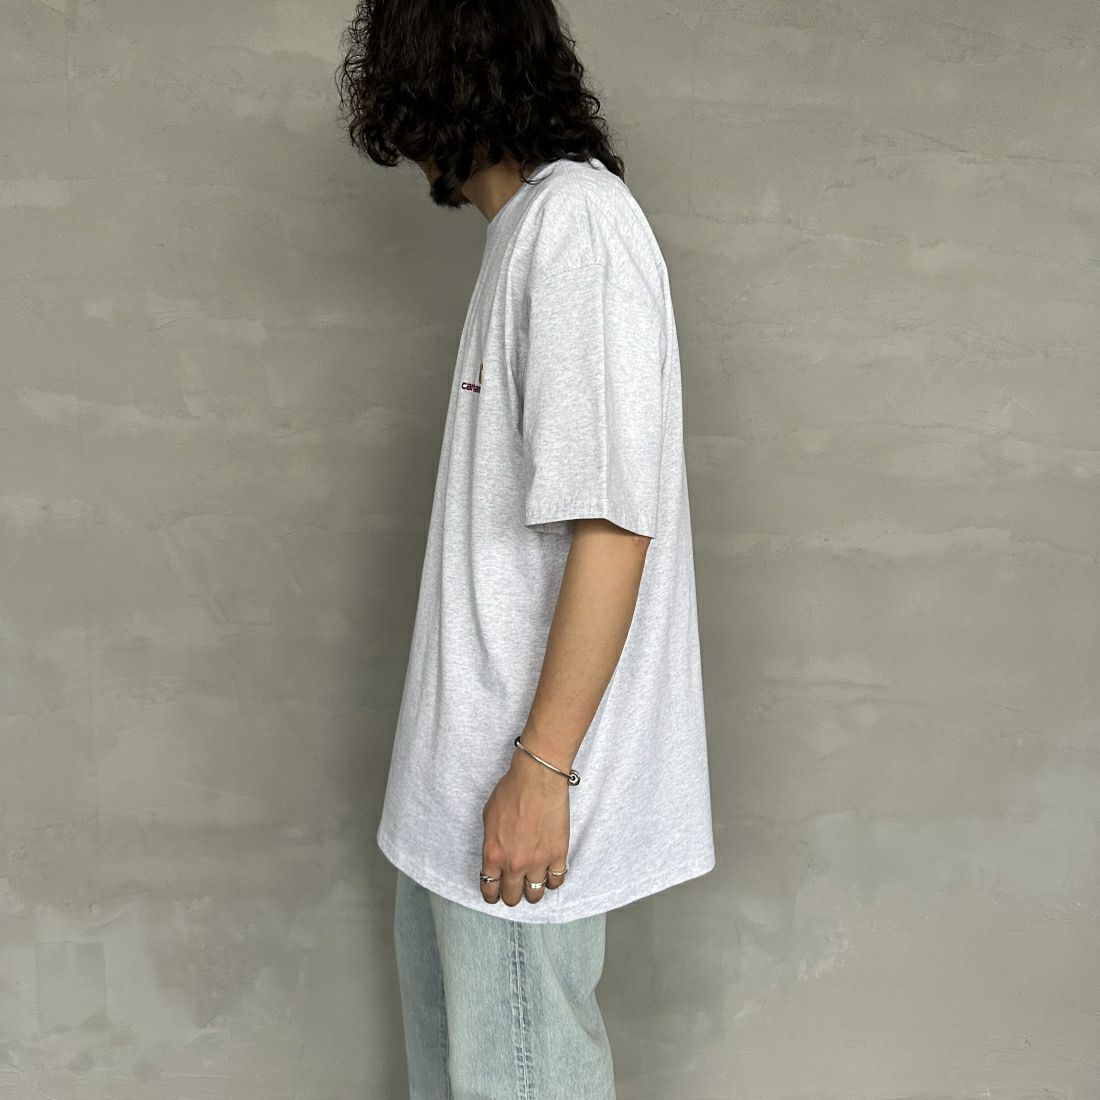 carhartt WIP [カーハートダブリューアイピー] ショートスリーブアメリカンスクリプトTシャツ [I029956] WHITE &&モデル身長：173cm 着用サイズ：XL&&